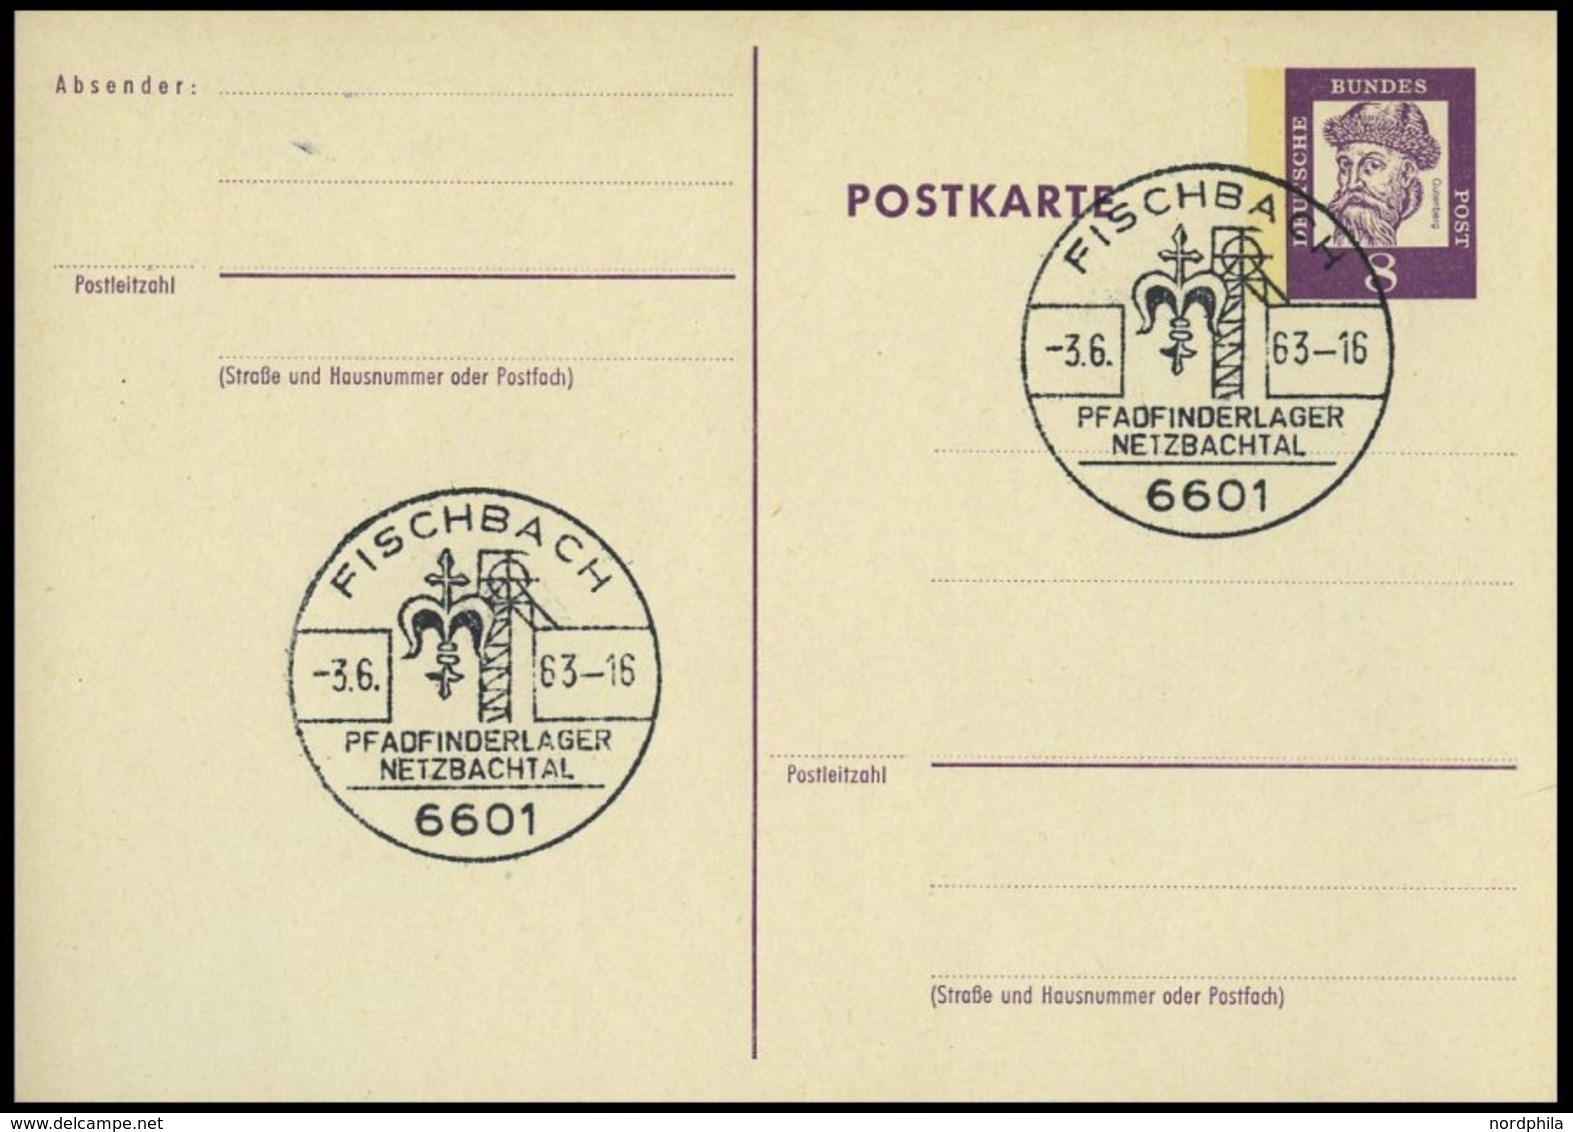 GANZSACHEN P 73 BRIEF, 1962, 8 Pf. Gutenberg, Postkarte In Grotesk-Schrift, Leer Gestempelt Mit Sonderstempel FISCHBACH  - Collections